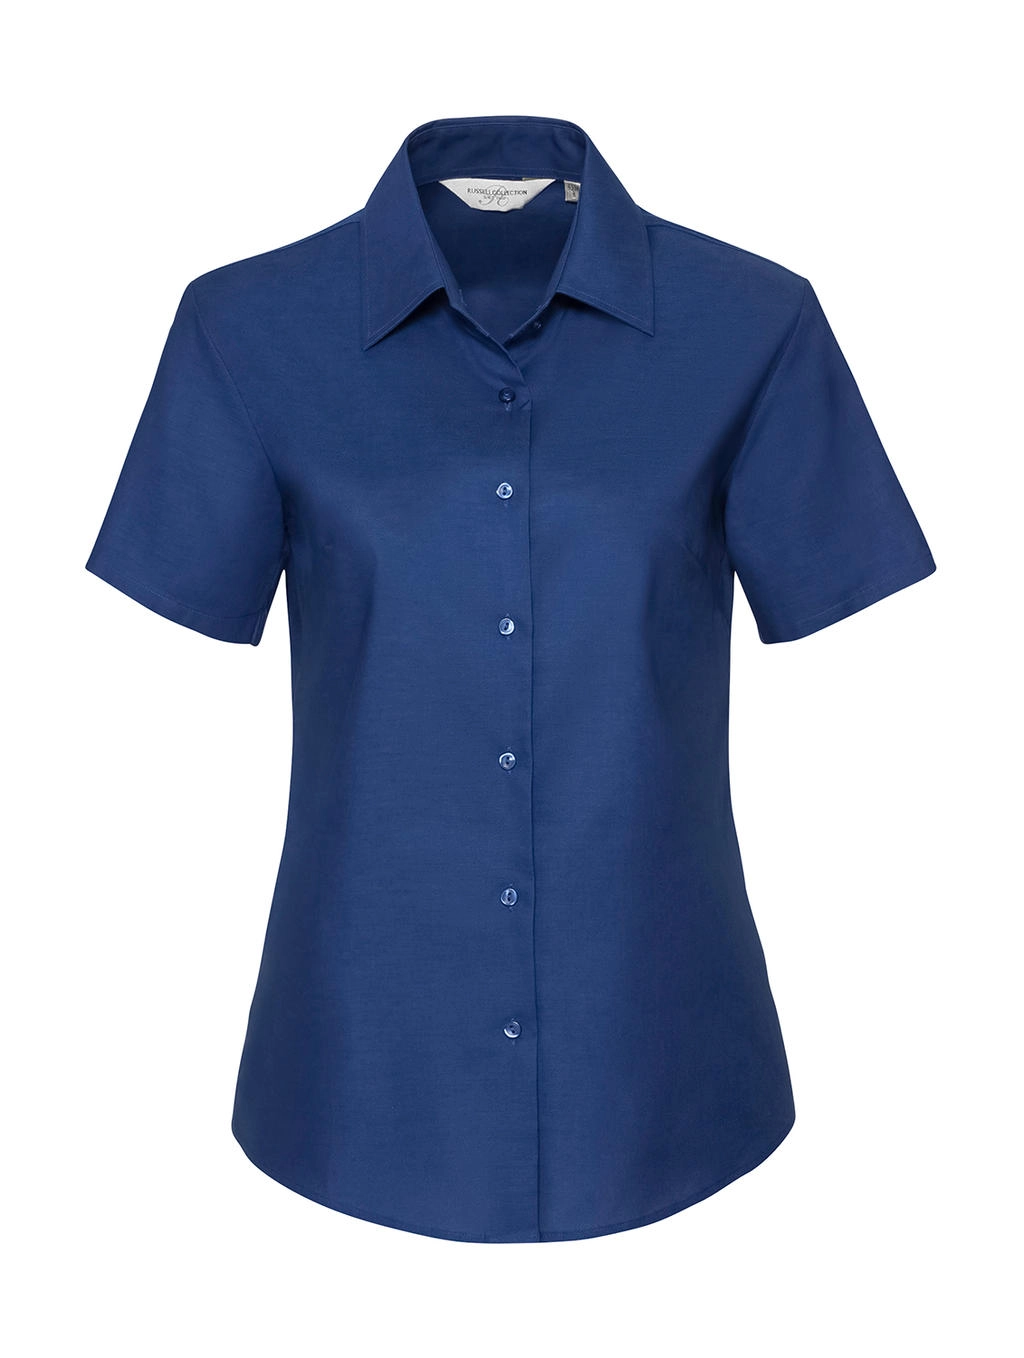 Ladies` Classic Oxford Shirt zum Besticken und Bedrucken in der Farbe Bright Royal mit Ihren Logo, Schriftzug oder Motiv.